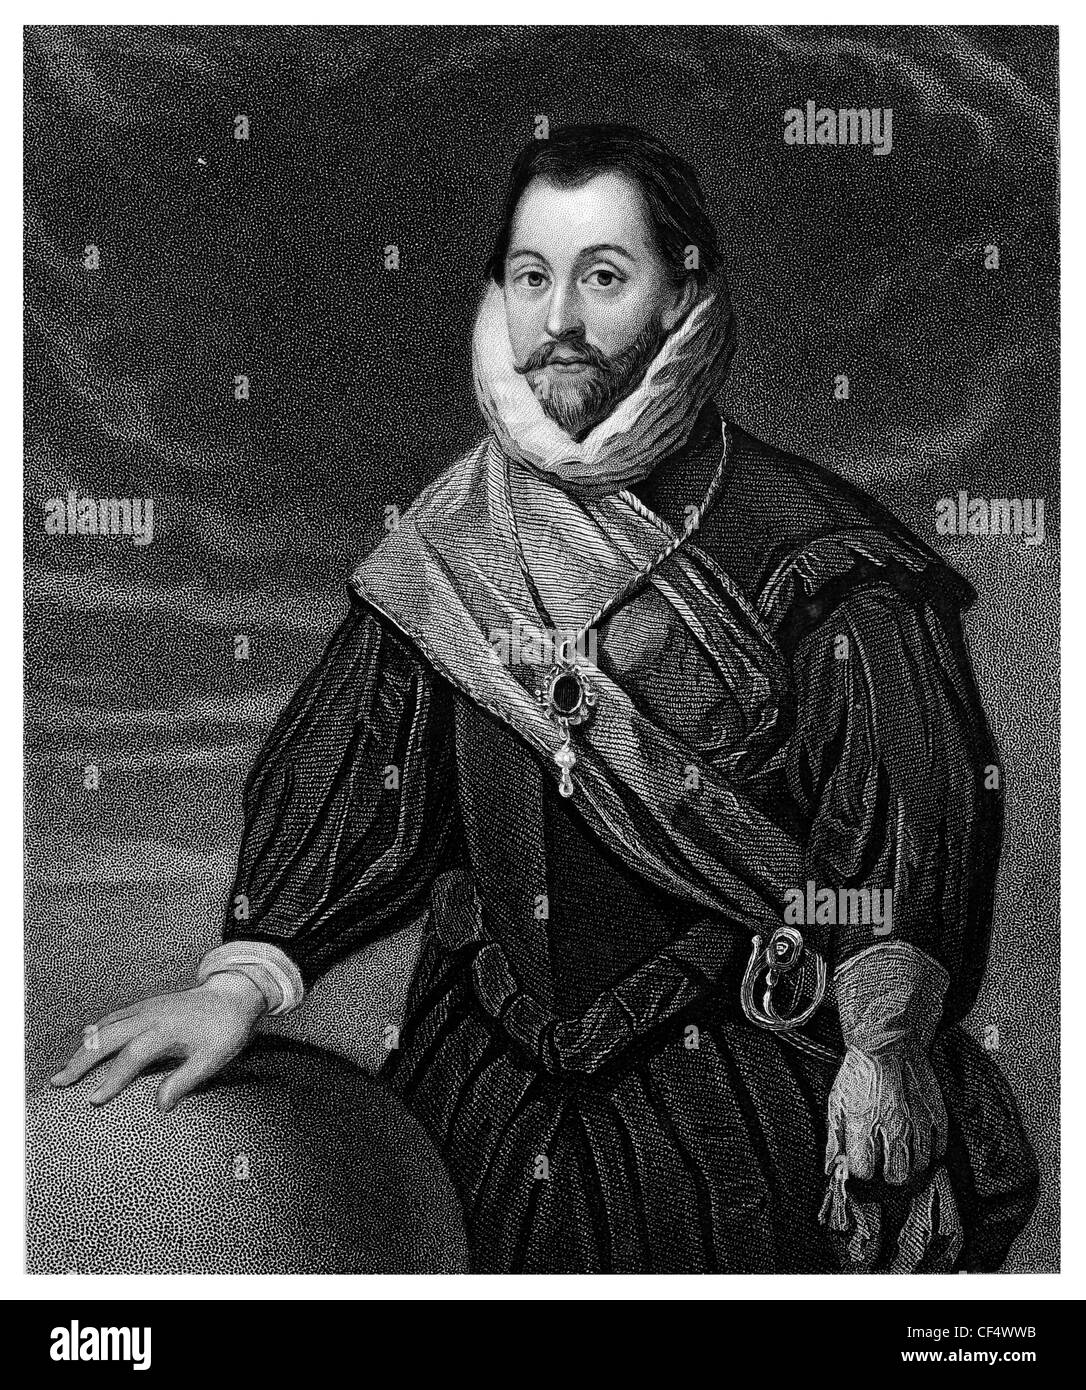 Le Vice-amiral Sir Francis Drake capitaine corsaire anglais navigator slaver politicien ère élisabéthaine Armada espagnole Banque D'Images